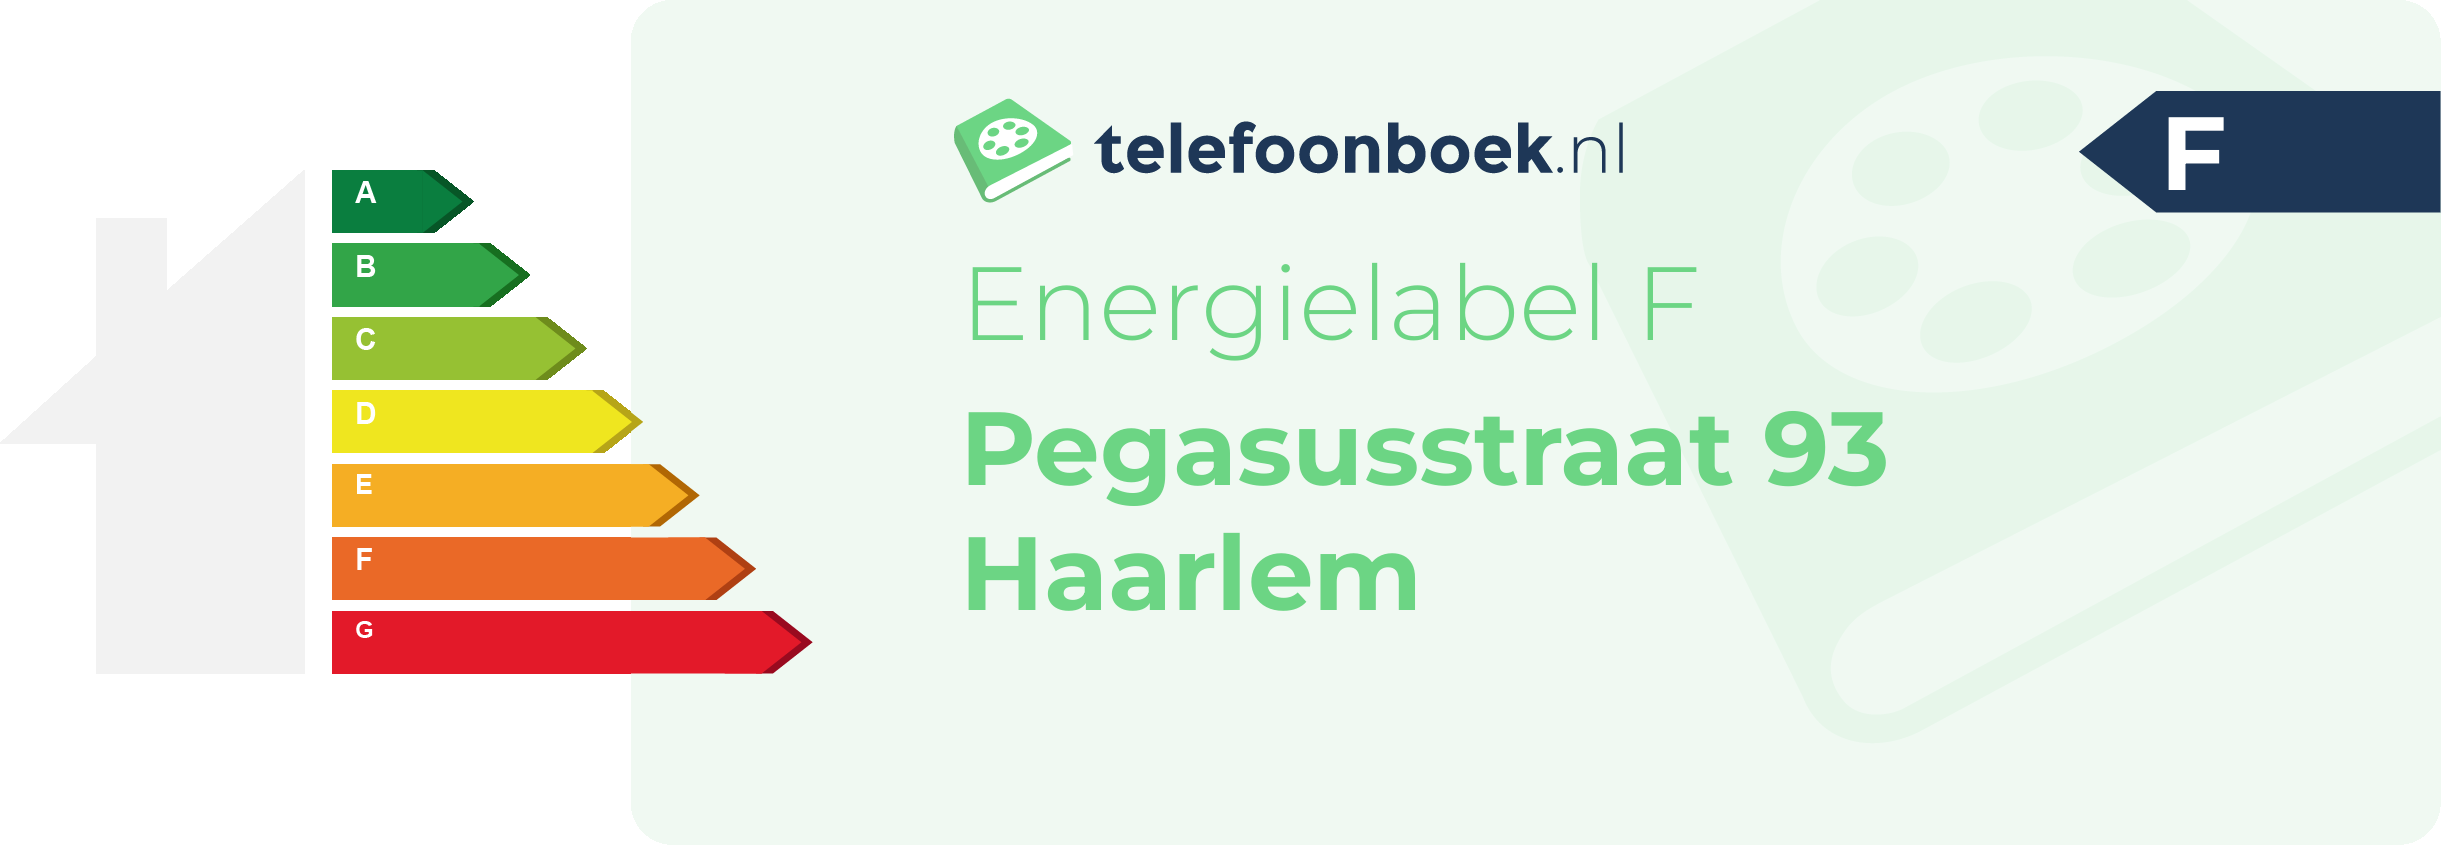 Energielabel Pegasusstraat 93 Haarlem